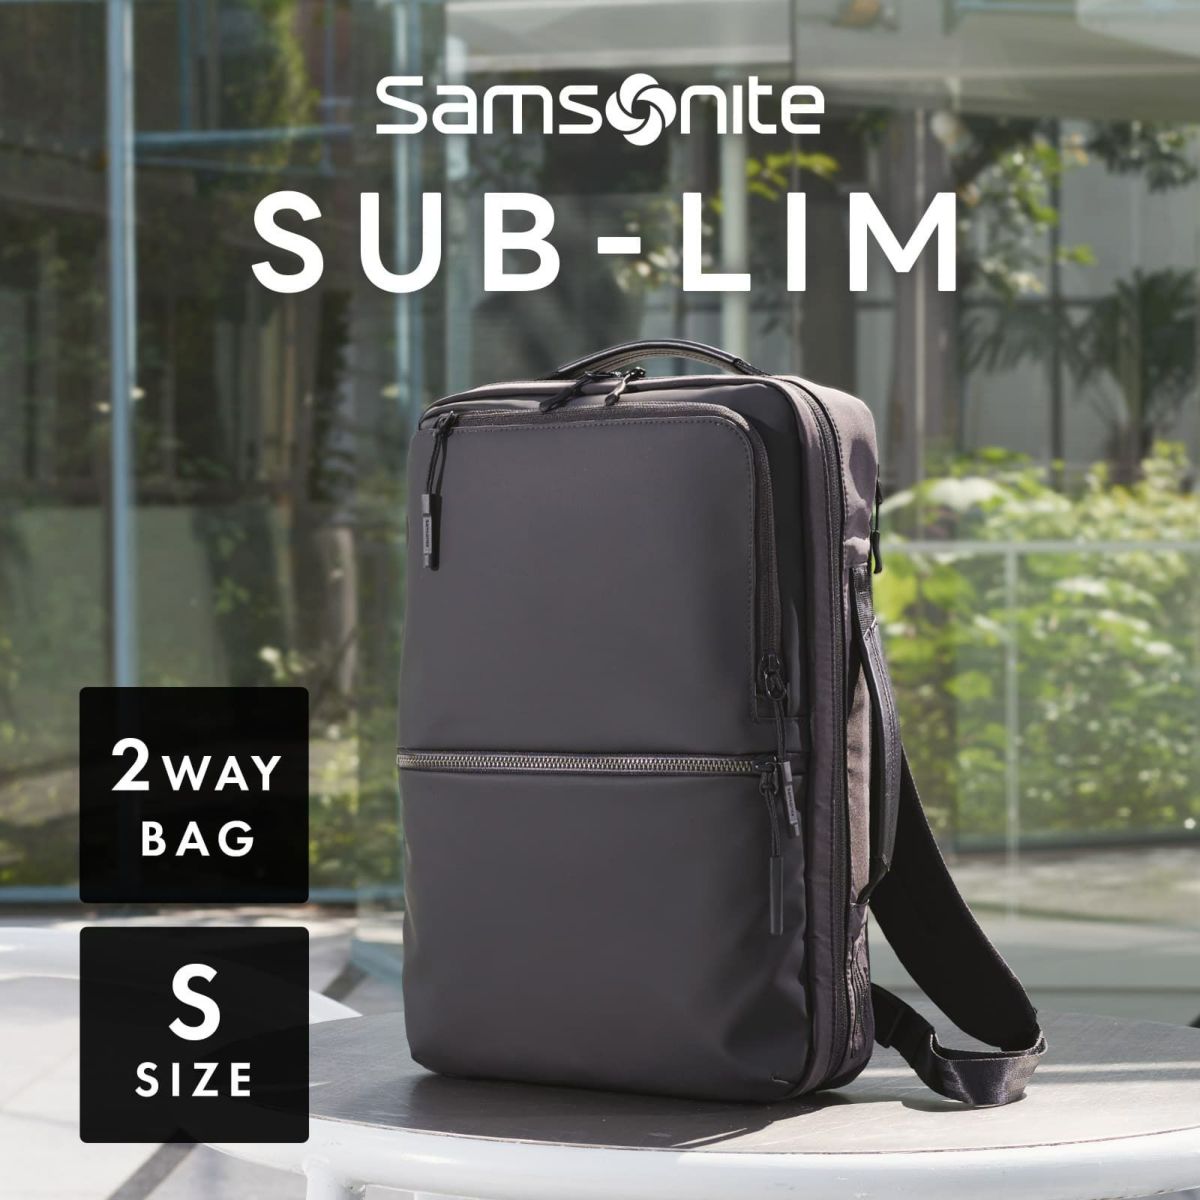 サムソナイト Samsonite ビジネスバッグ 2way SUB-LIM 2WAY BAG S